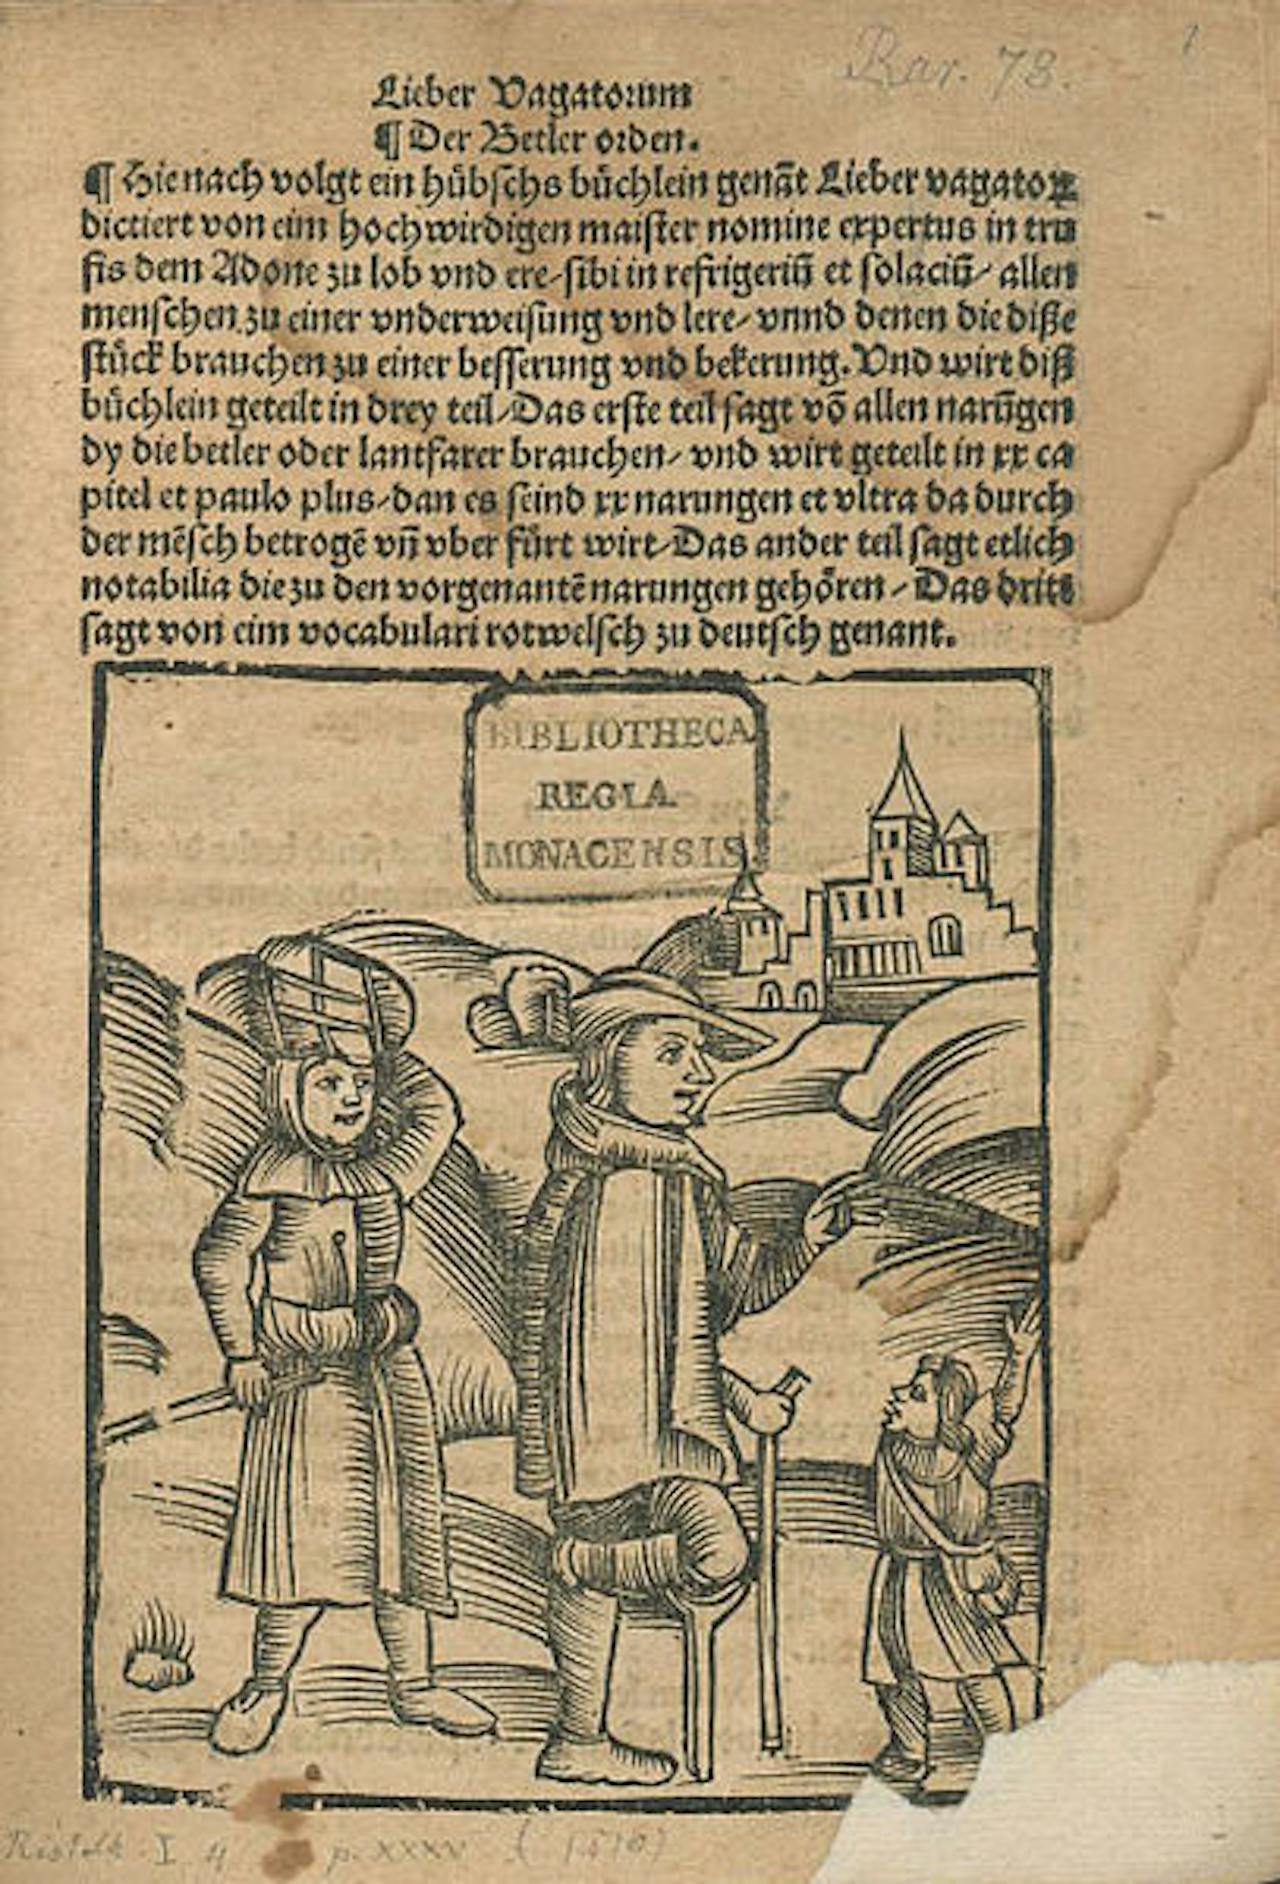 Een blad uit het boek Liber Vagatorum. Er is tekst te zien en een afbeelding van een bedelaarsfamilie die op weg is naar de stad.